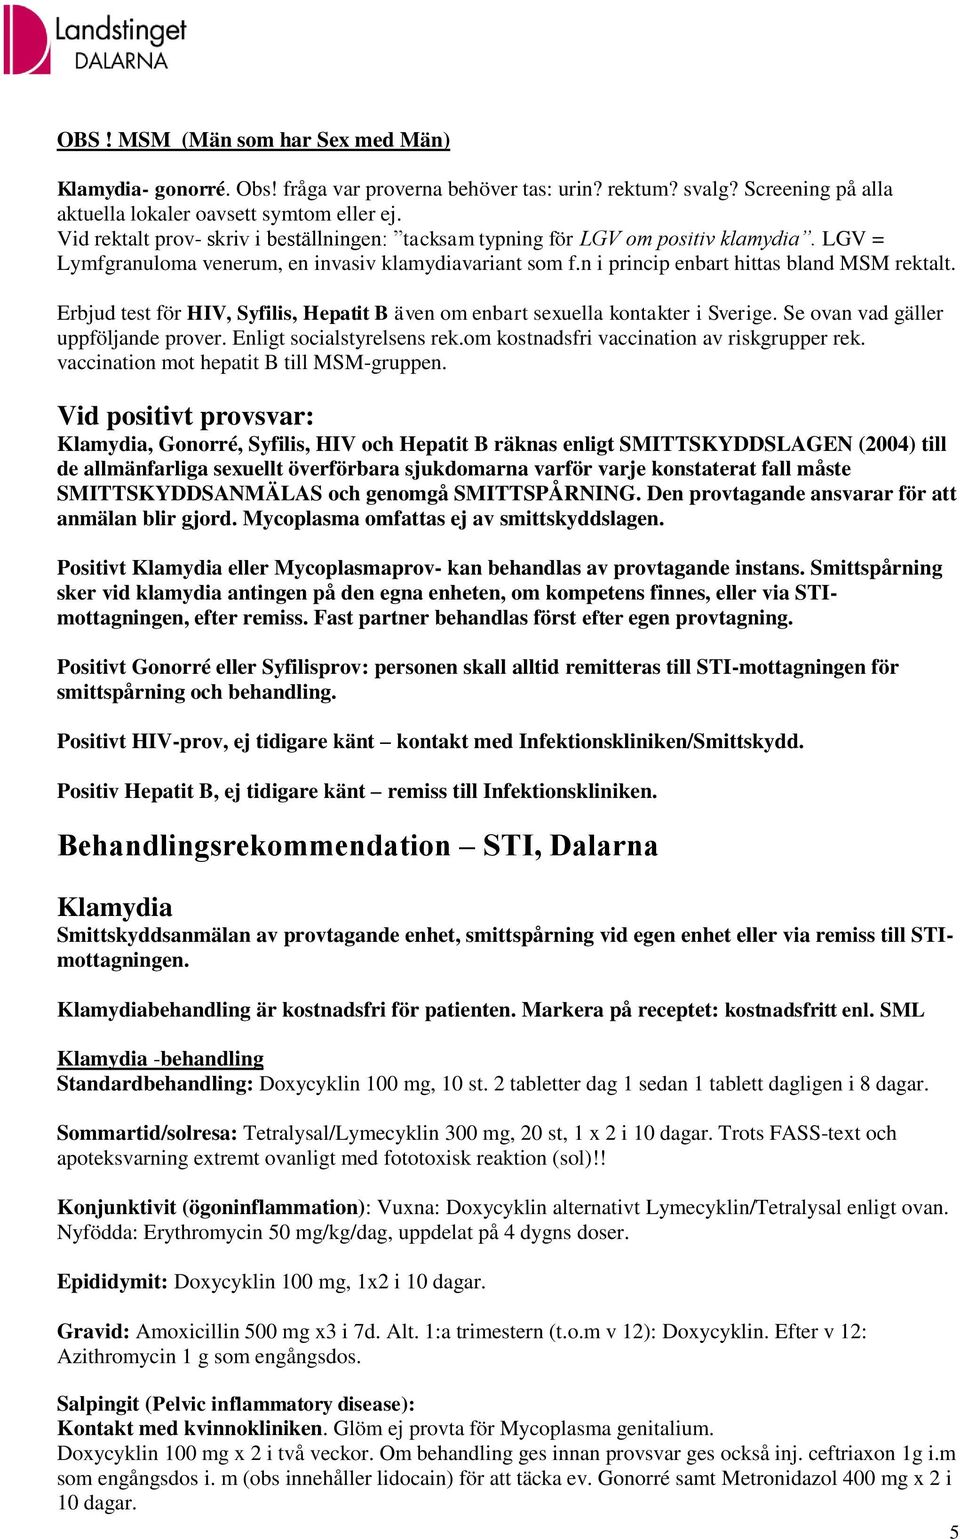 Erbjud test för HIV, Syfilis, Hepatit B även om enbart sexuella kontakter i Sverige. Se ovan vad gäller uppföljande prover. Enligt socialstyrelsens rek.om kostnadsfri vaccination av riskgrupper rek.